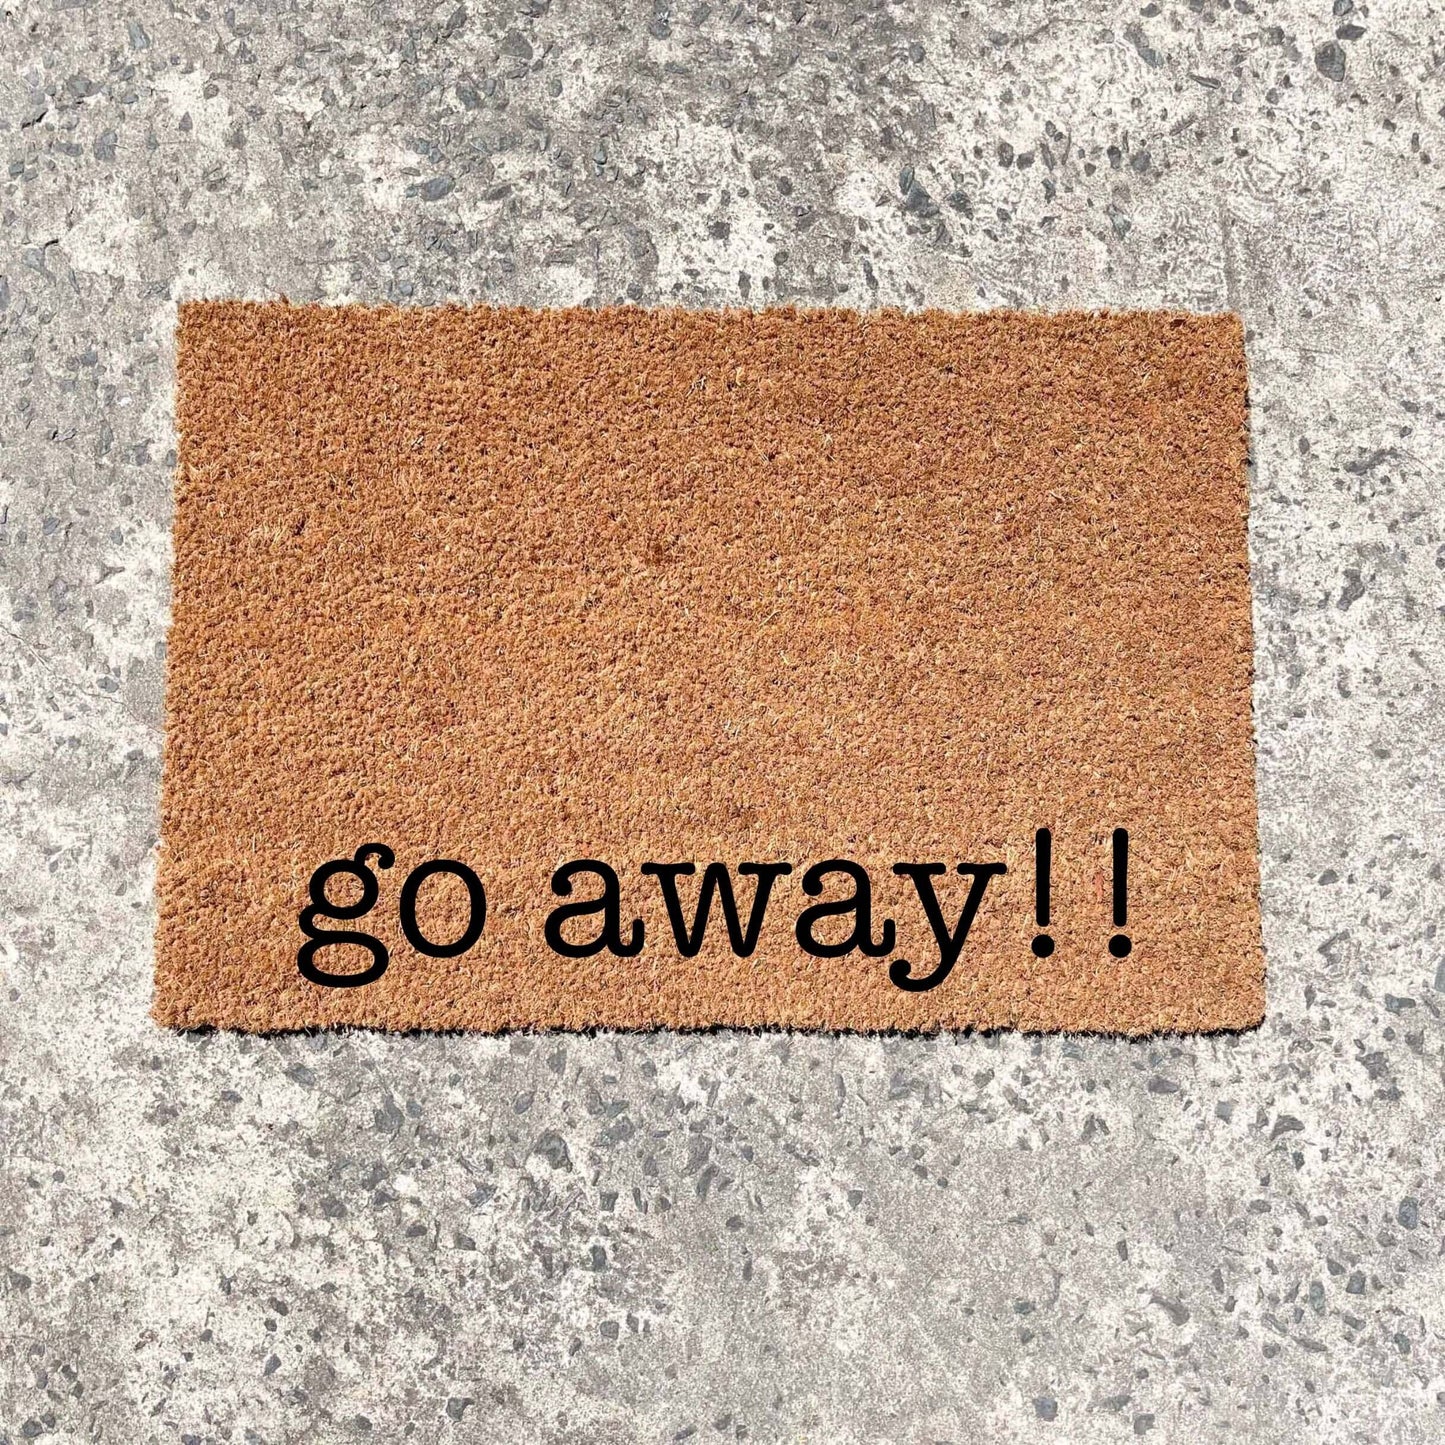 Go away!! doormat, custom doormat, personalised doormat, door mat